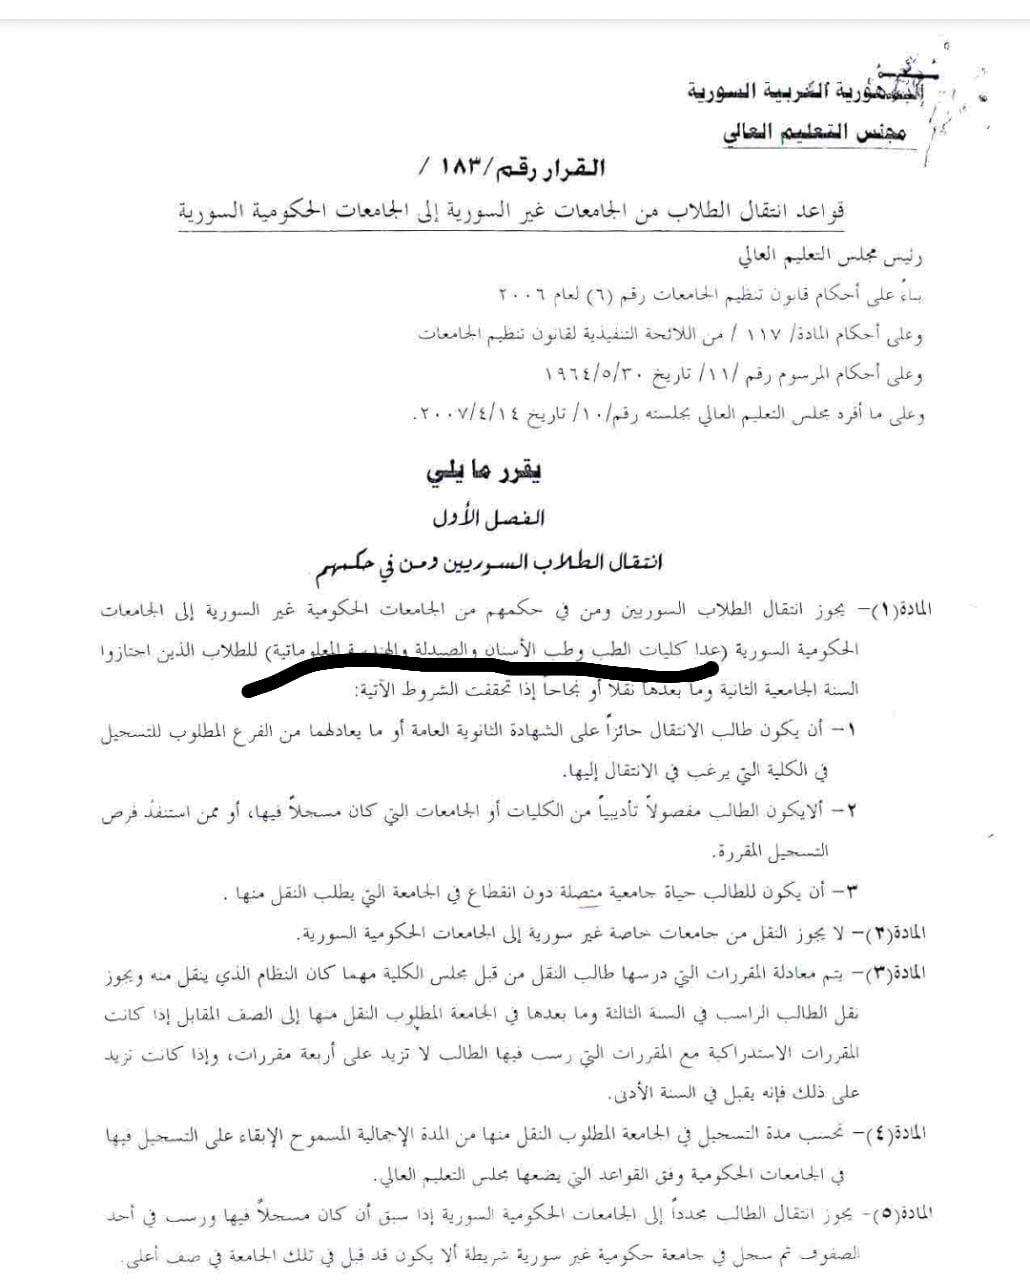 صورة عن قرار لوزارة التعليم العالي في سوريا حول انتقال الطلاب من الجامعات غير السورية، صادر في عام 2006 (الإنترنت)